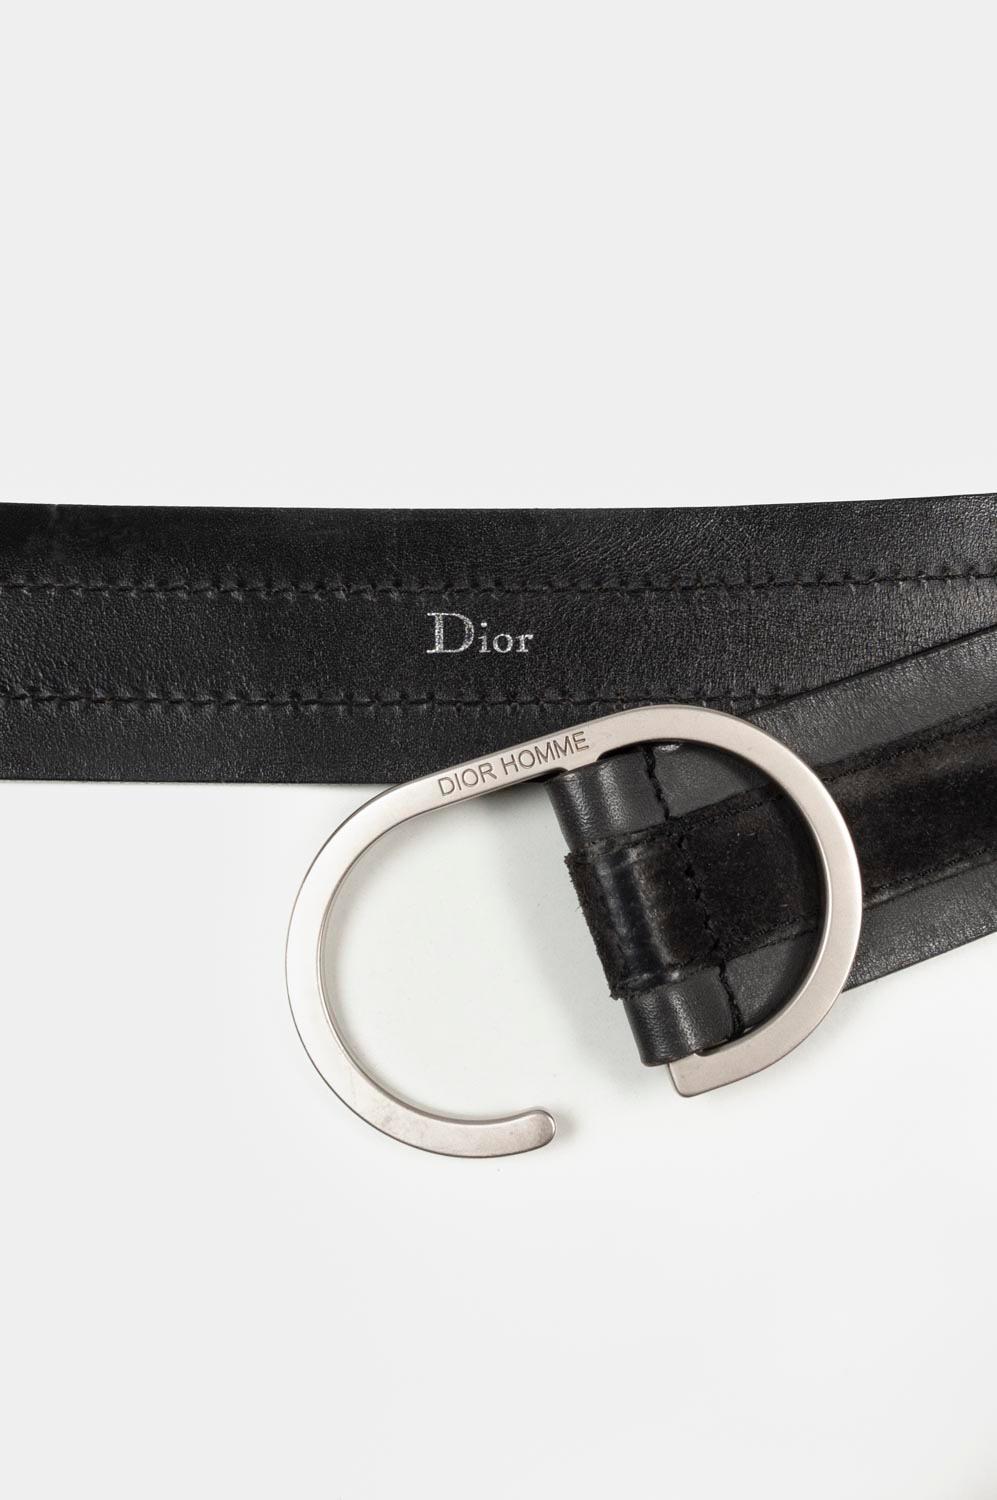 Dior Homme Men Leather Belt Size 90 (Medium) S534 For Sale 2